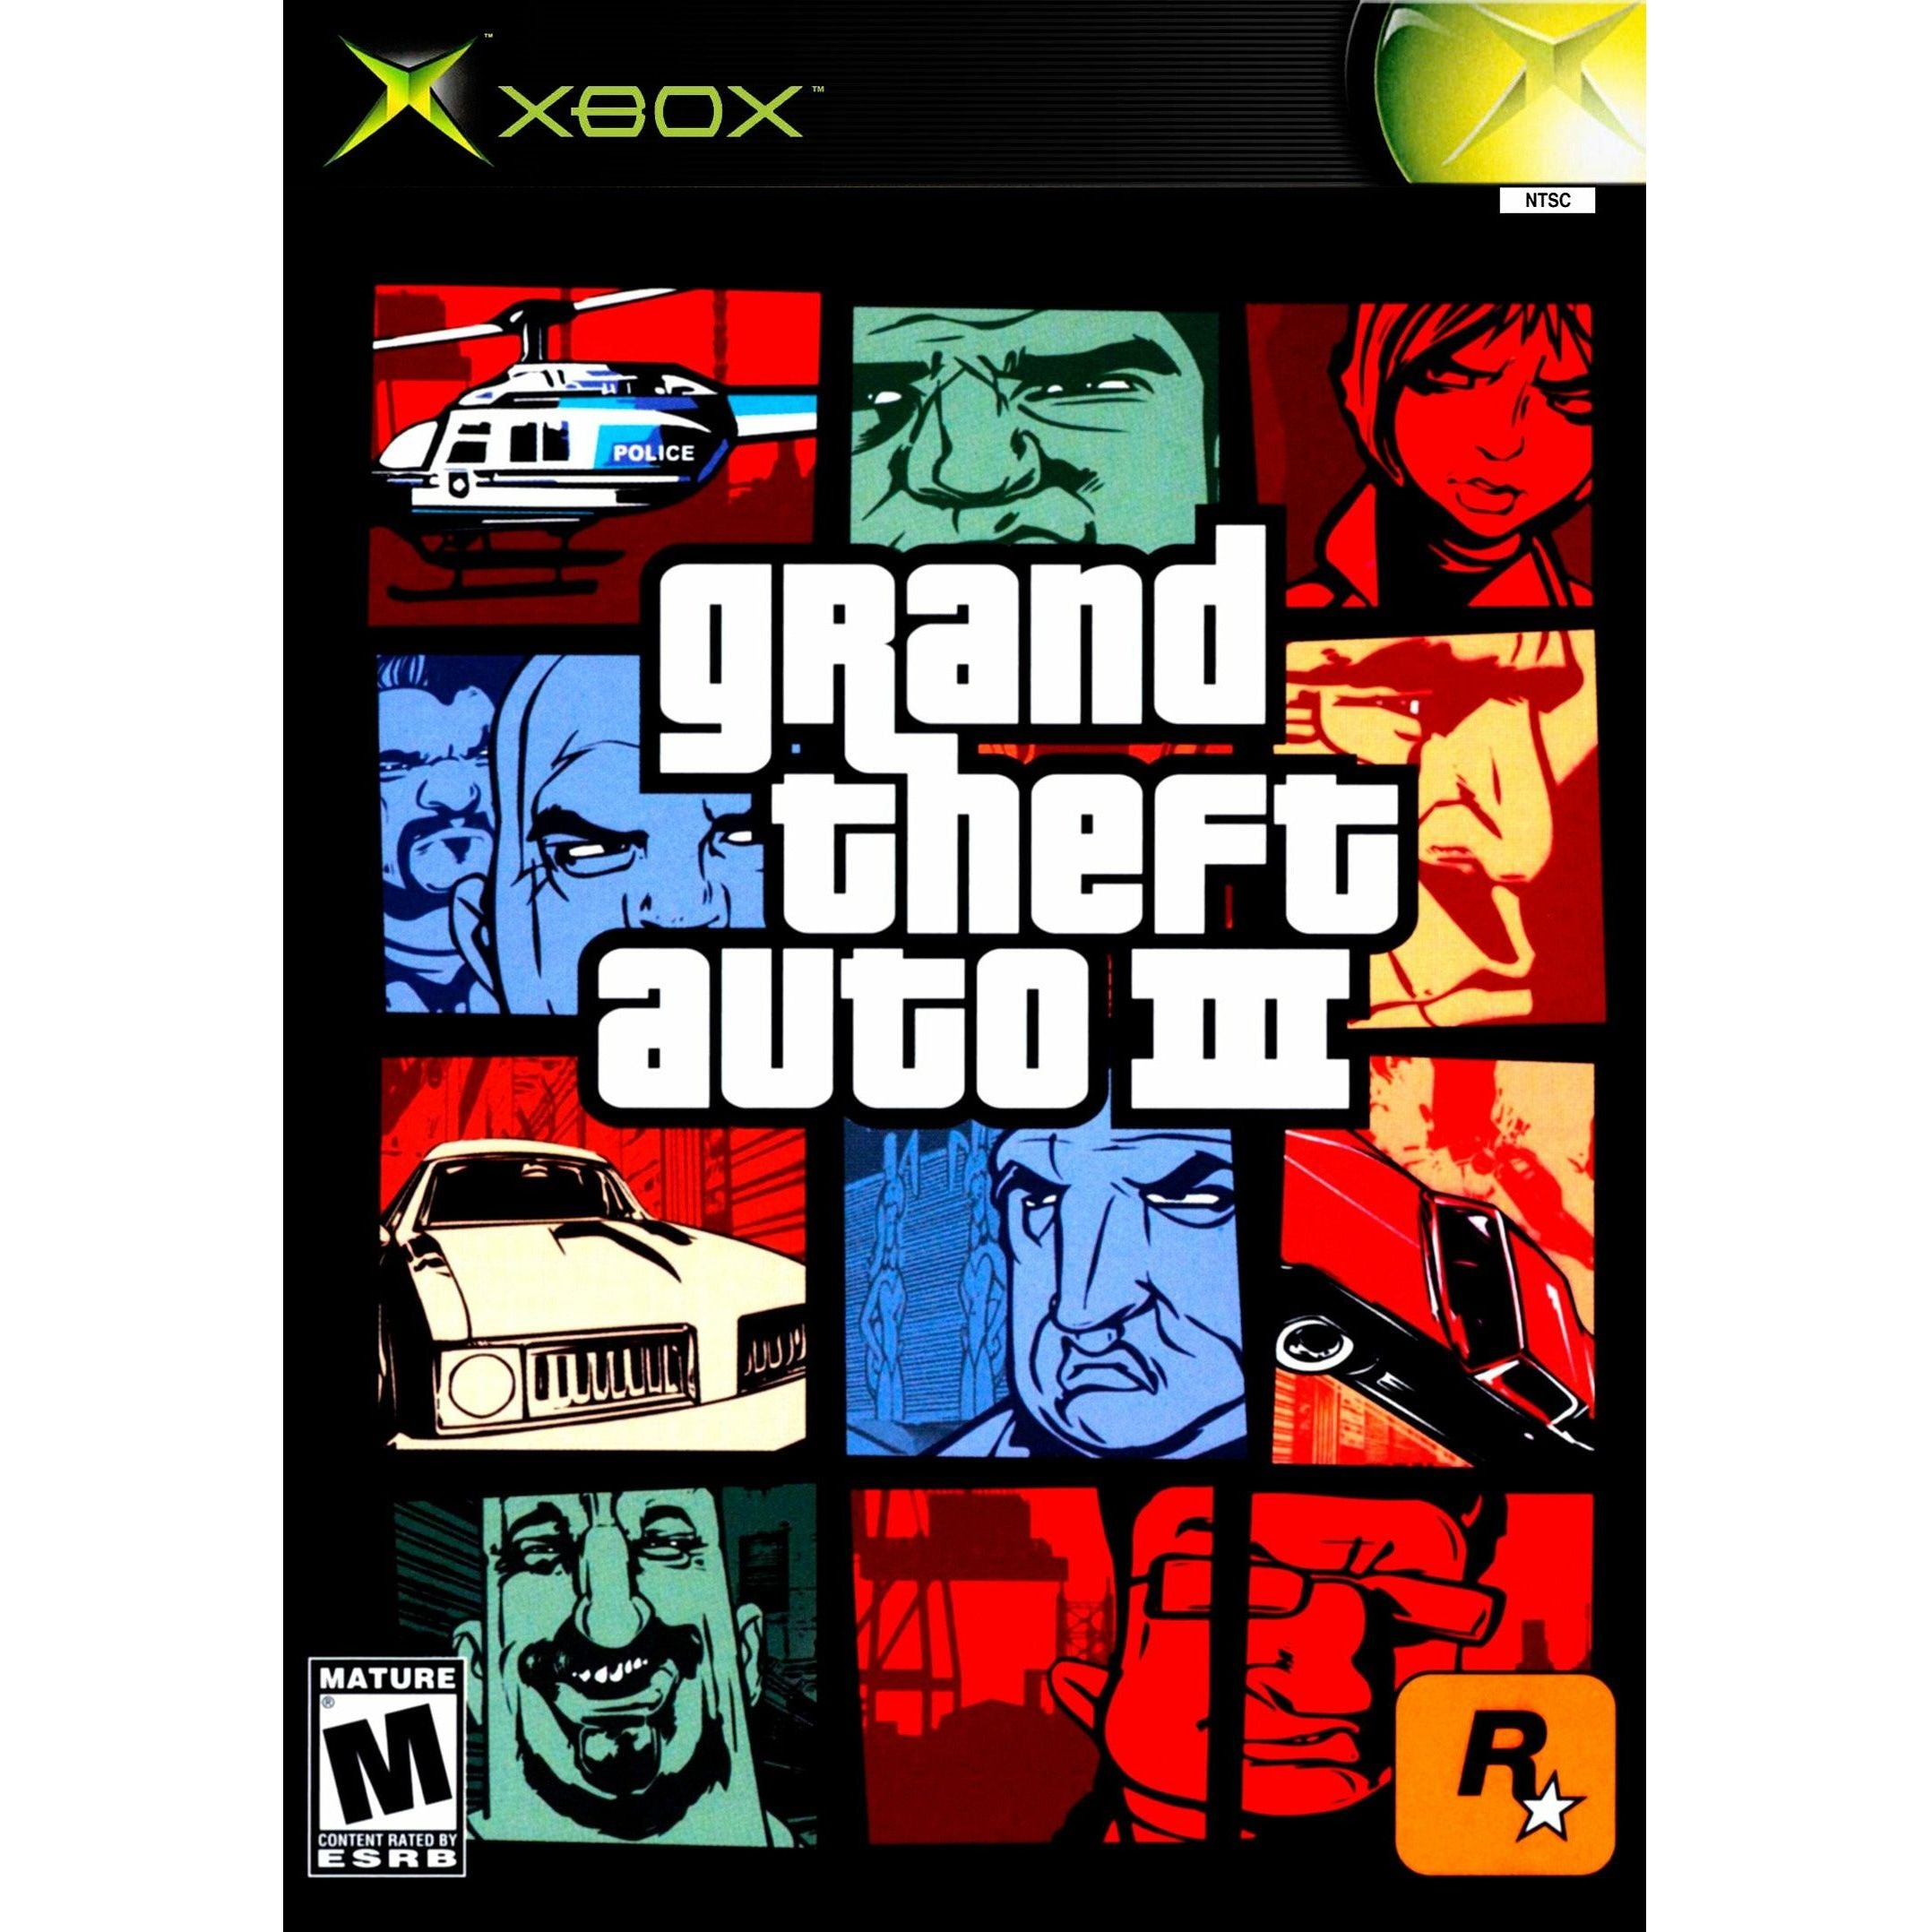 XBOX-Grand Theft Auto III